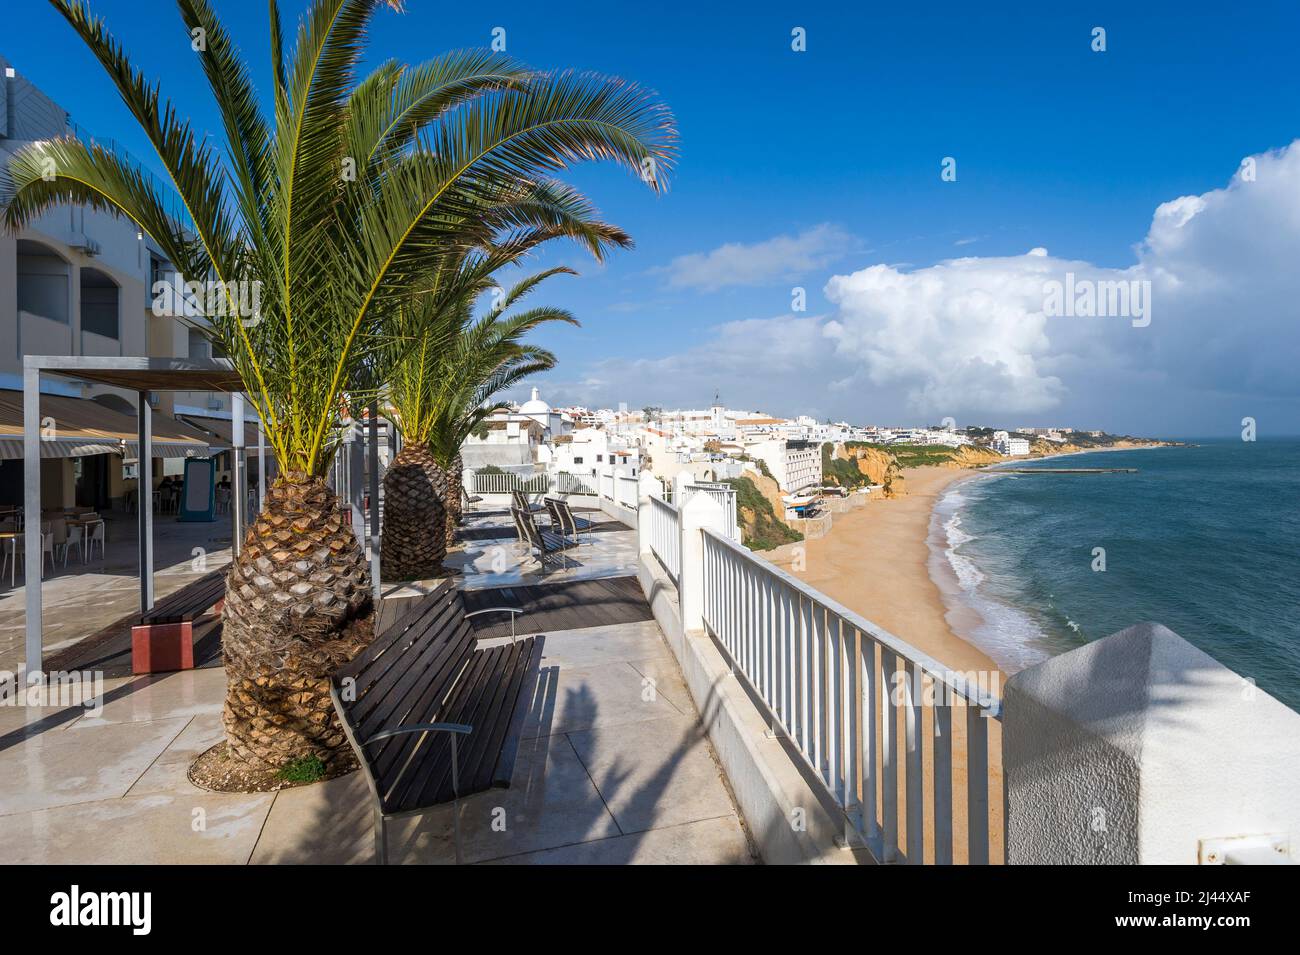 Cityscape at the Promenade Dr Frutuoso da Silva, Albufeira, Algarve, Portugal, Europe Stock Photo